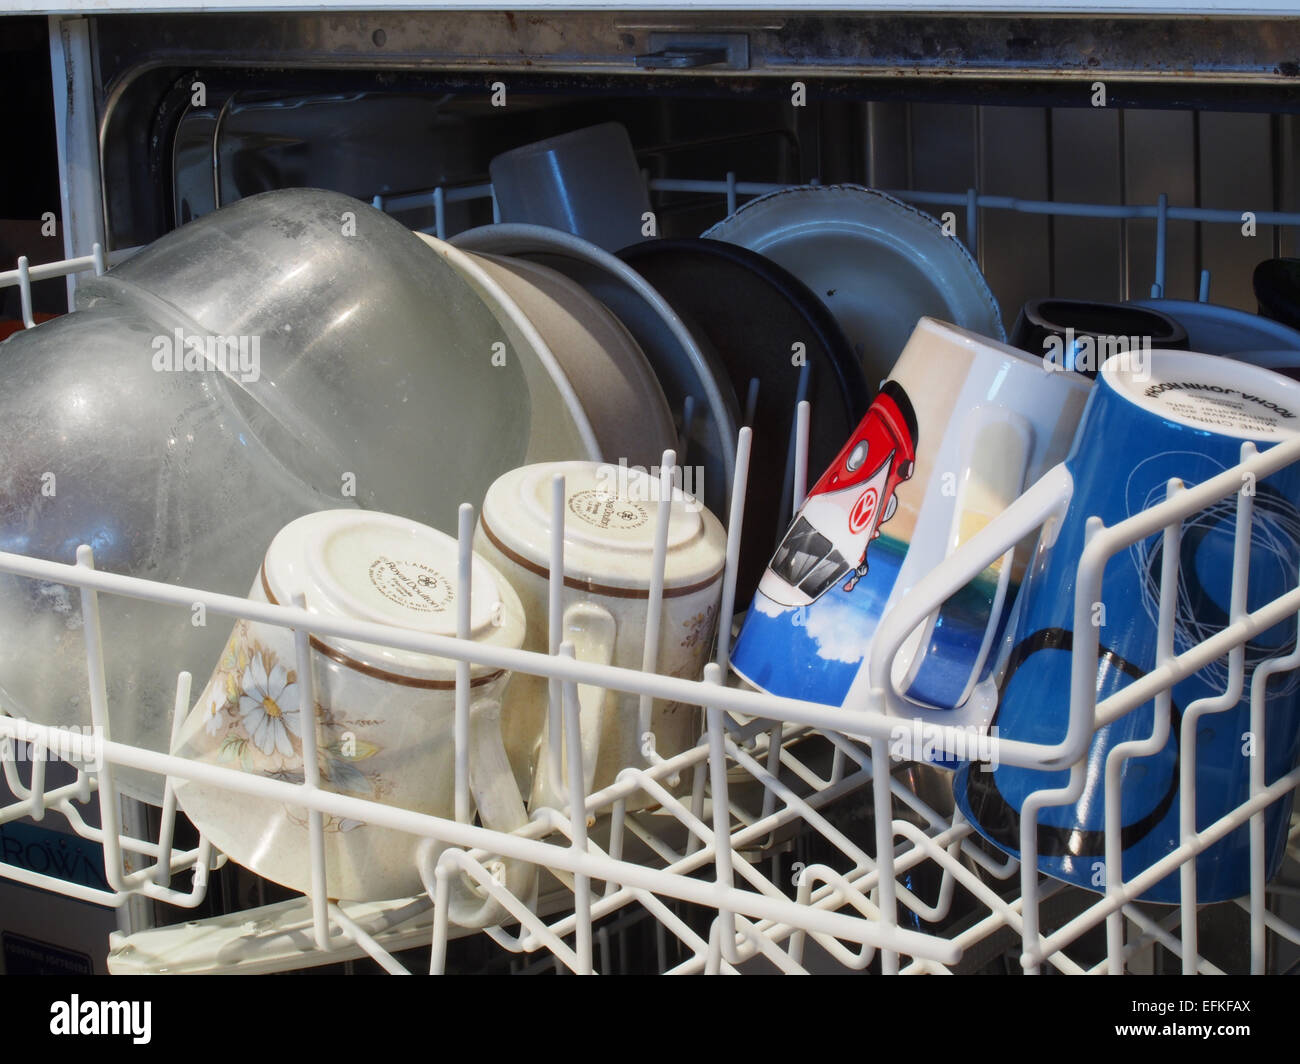 Capa superior de un lavavajillas cargado con lavabos y tazas a la espera de ser lavados Foto de stock